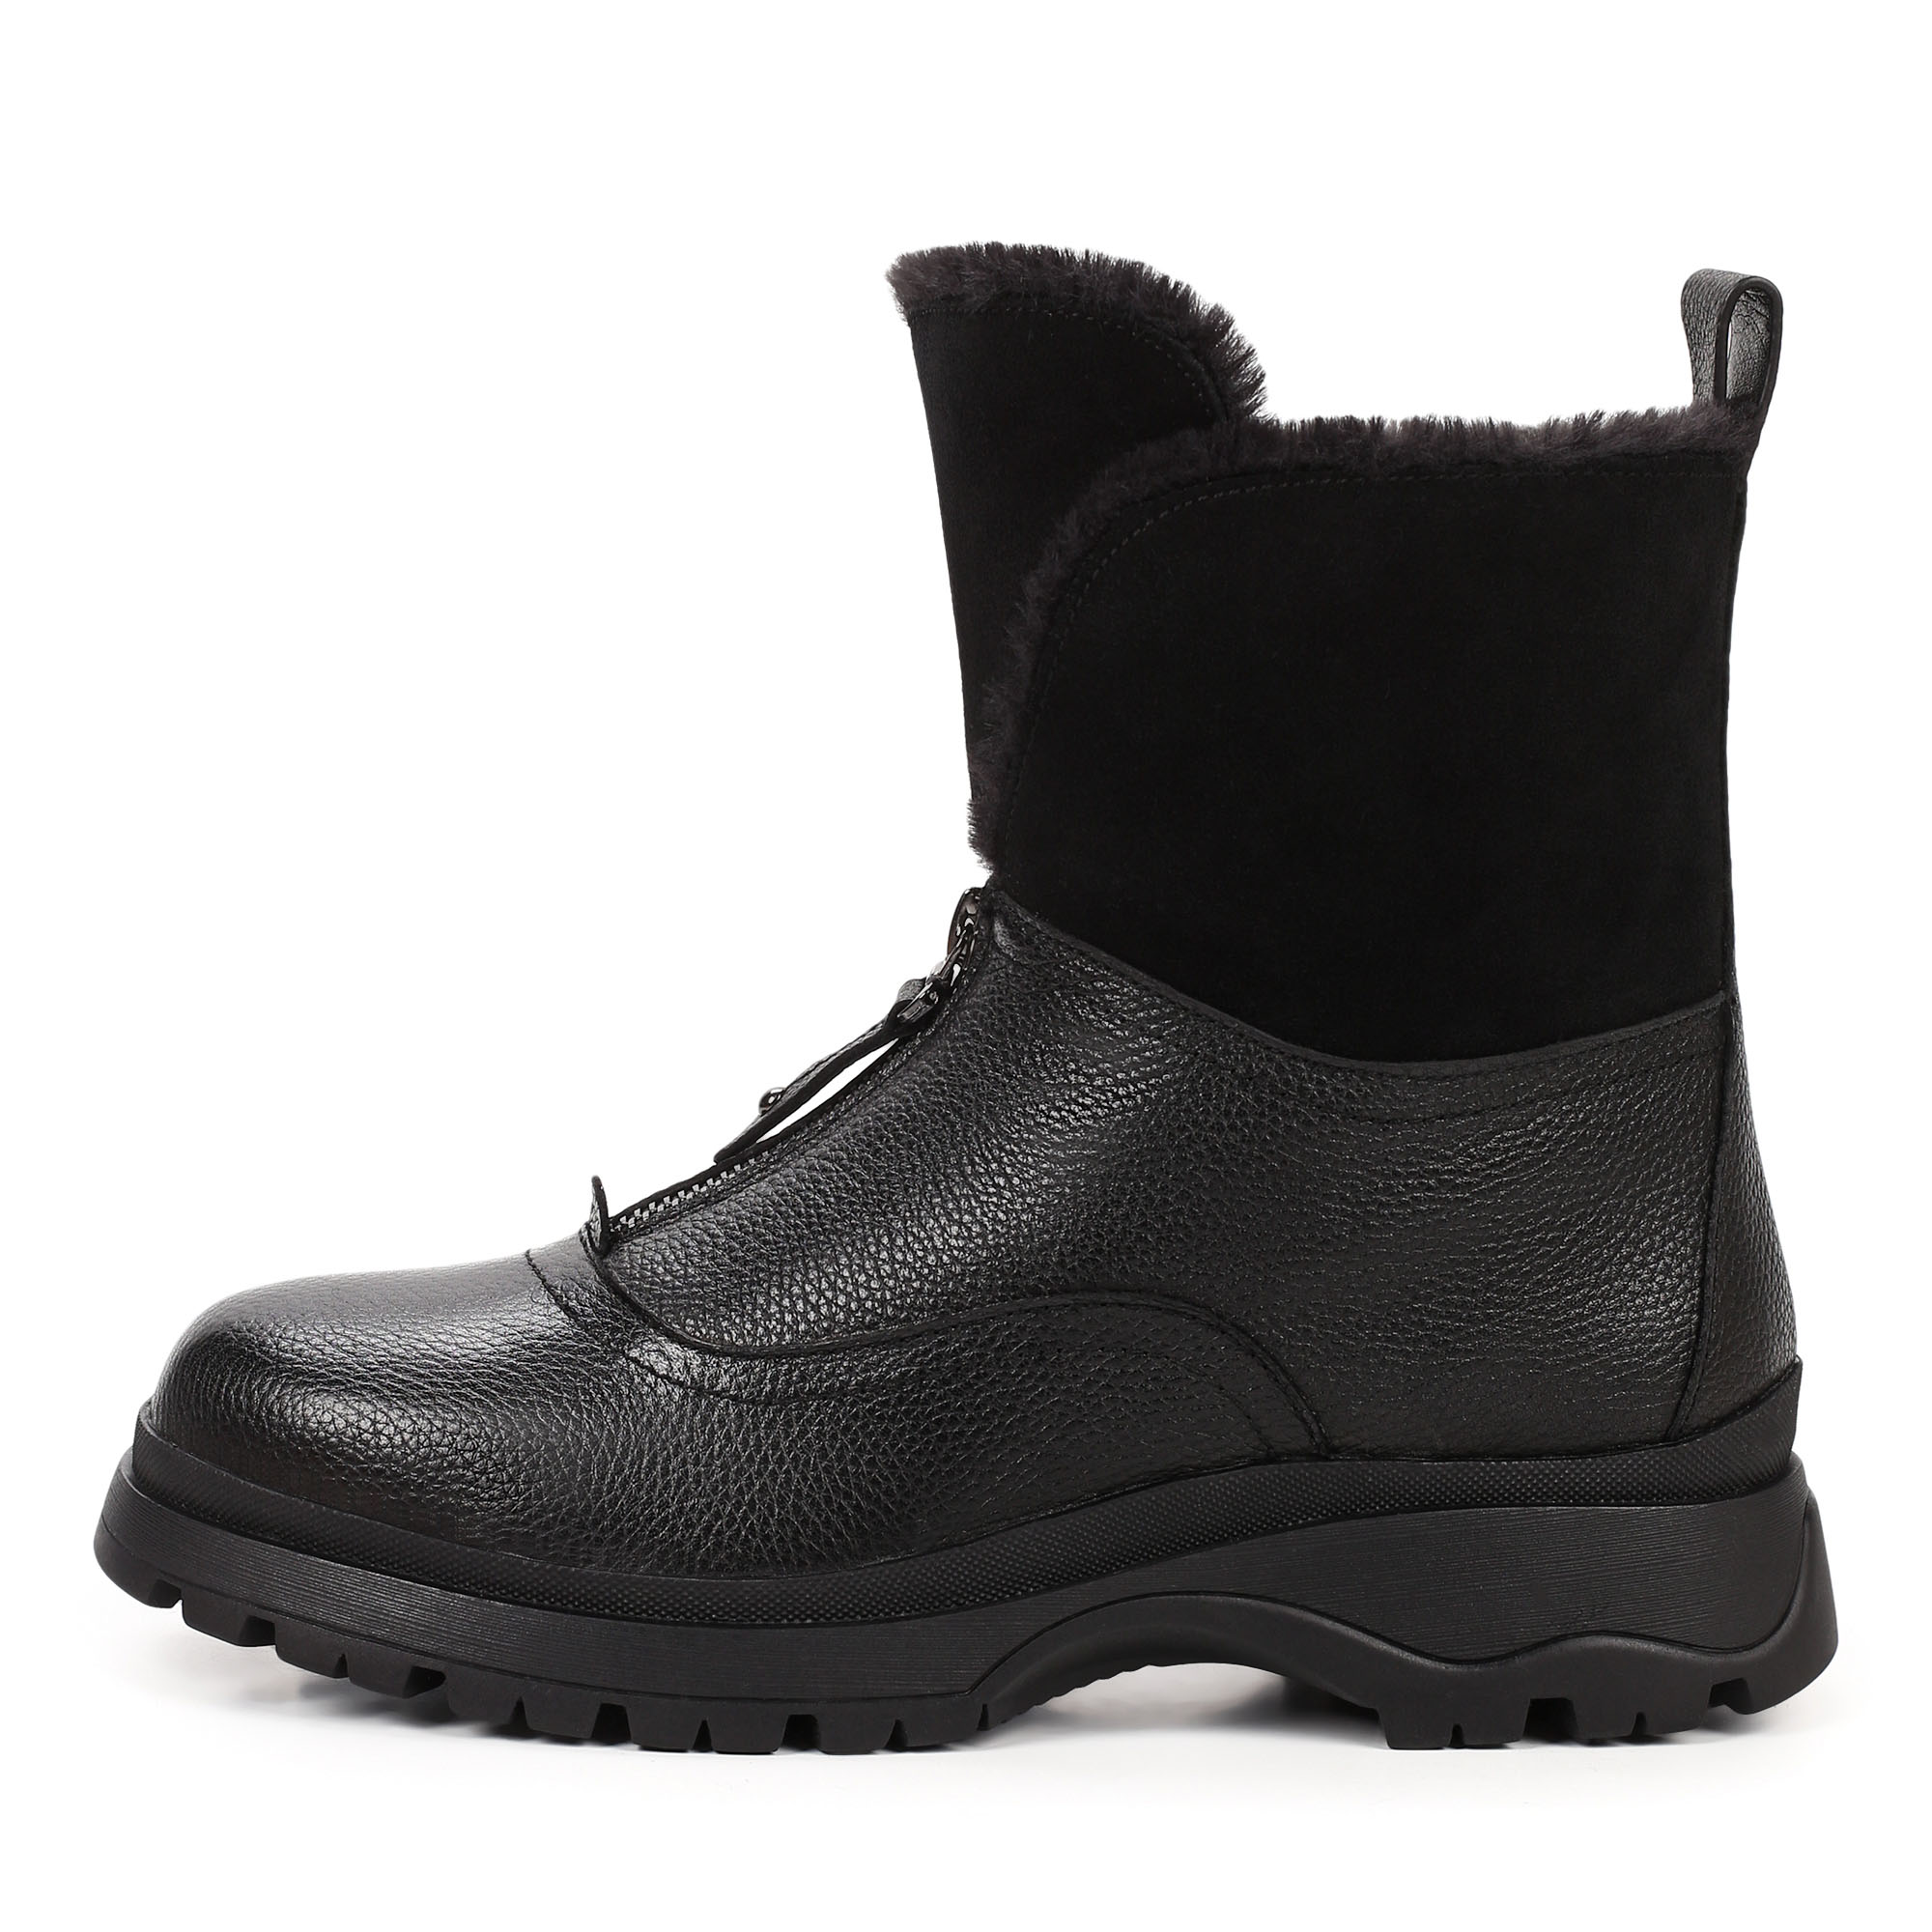 Ботинки Thomas Munz 233-710A-3102, цвет черный, размер 36